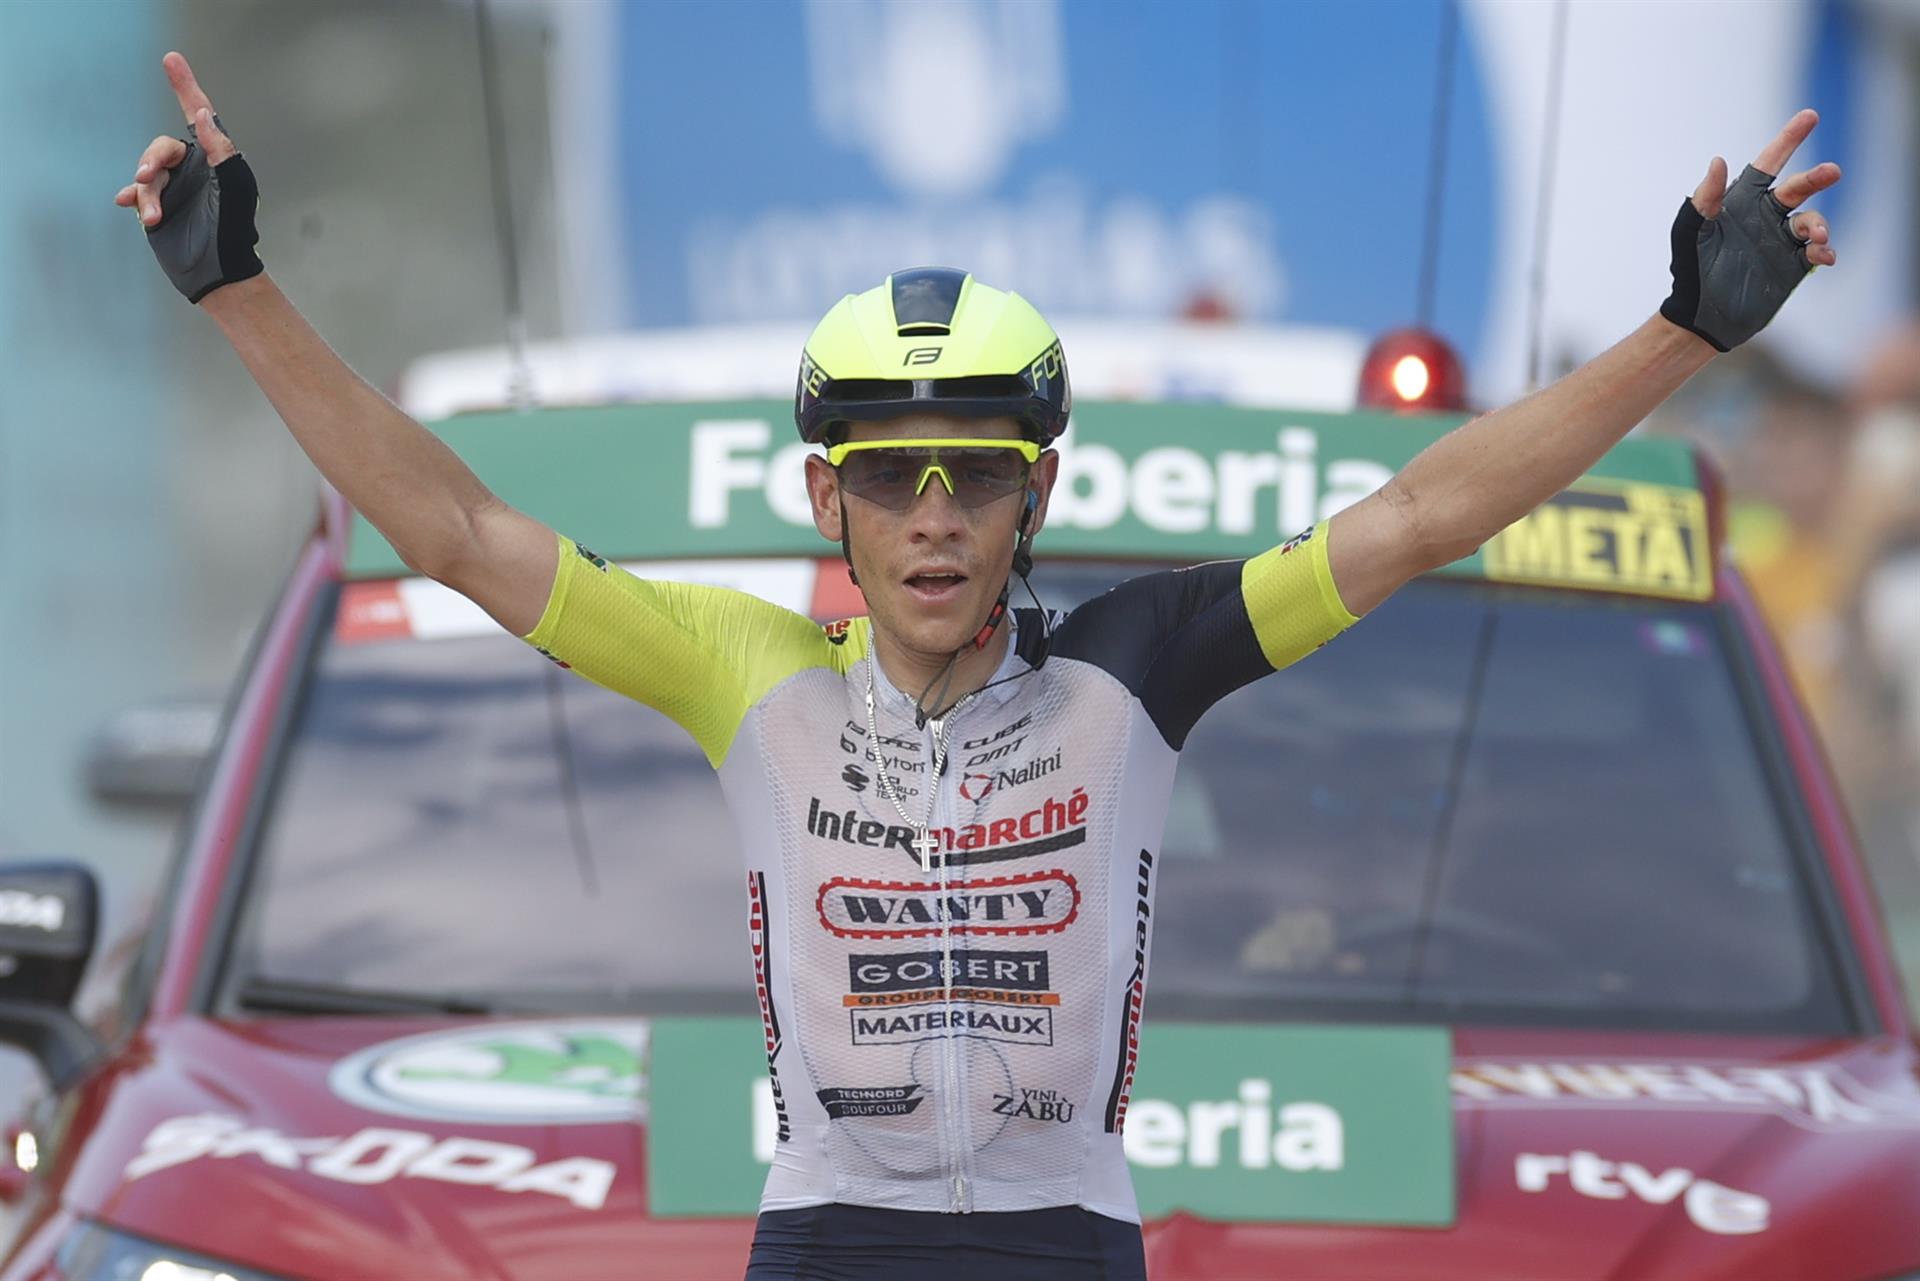 El corredor sudáfricano Louis Meintjes, entra vencedor de la novena etapa de La Vuelta Ciclista a España, disputada entre las localidades asturianas de Villaviciosa y Les Praeres, Nava (171,4 km.). EFE/Javier Lizón